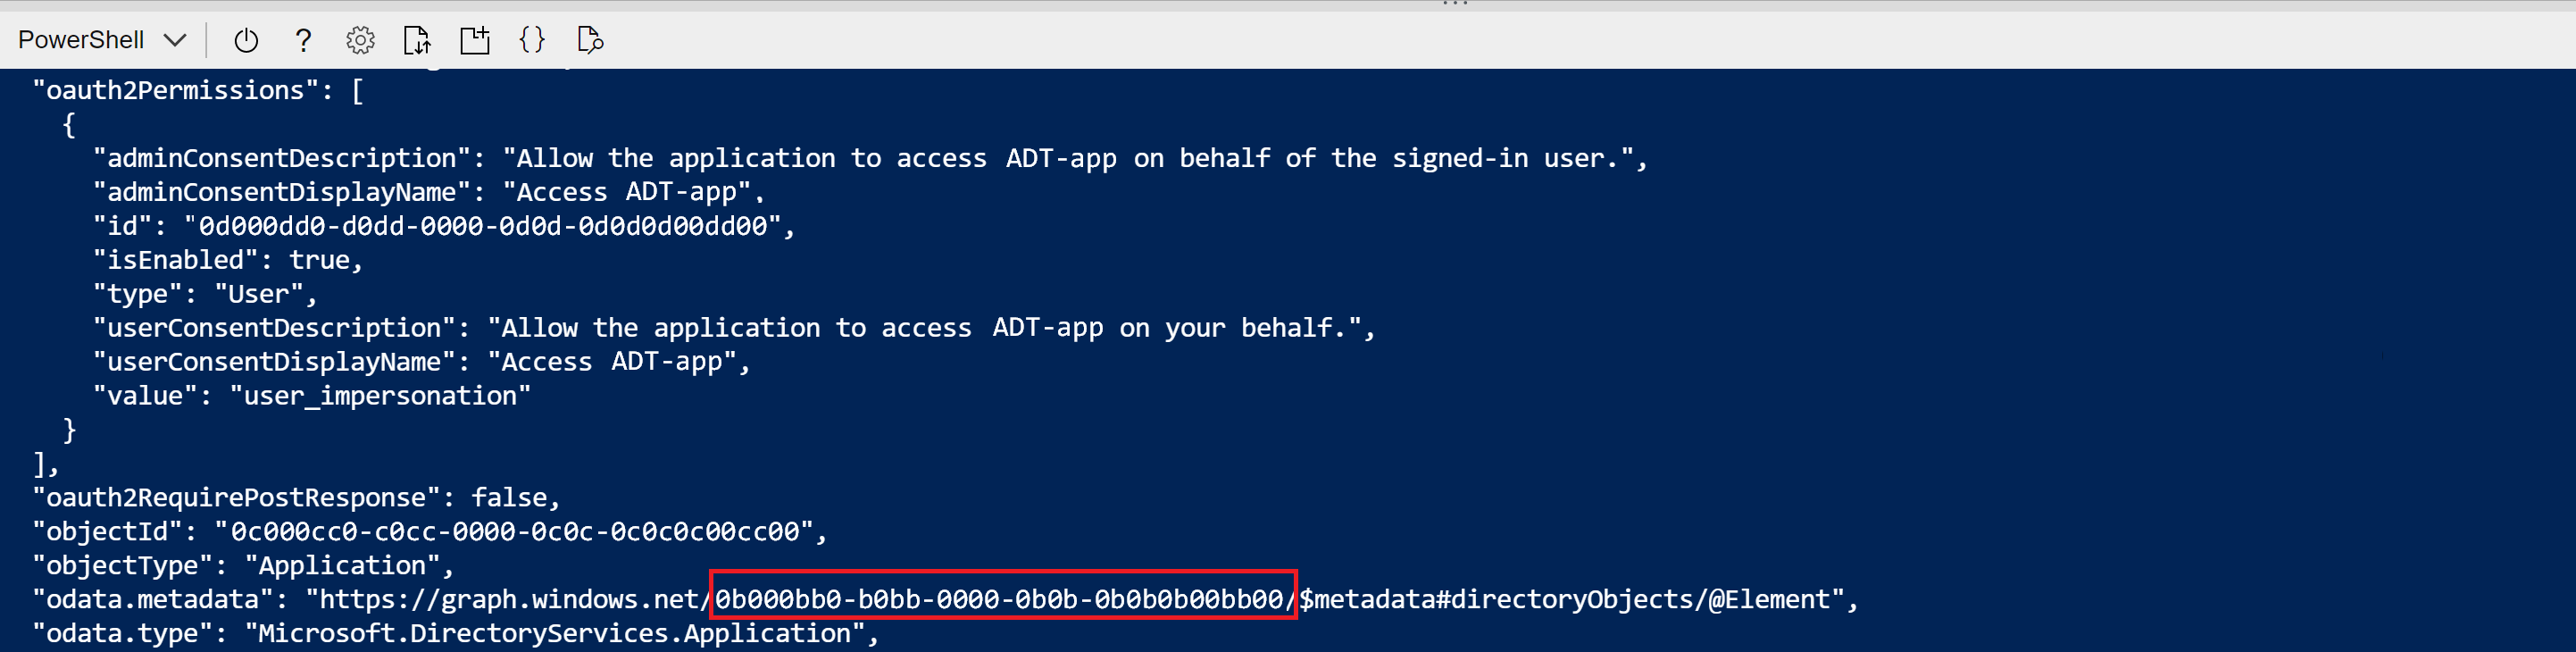 Captura de pantalla de la salida de Cloud Shell del comando de creación del registro de la aplicación. Está resaltado el valor GUID de odata.metadata.